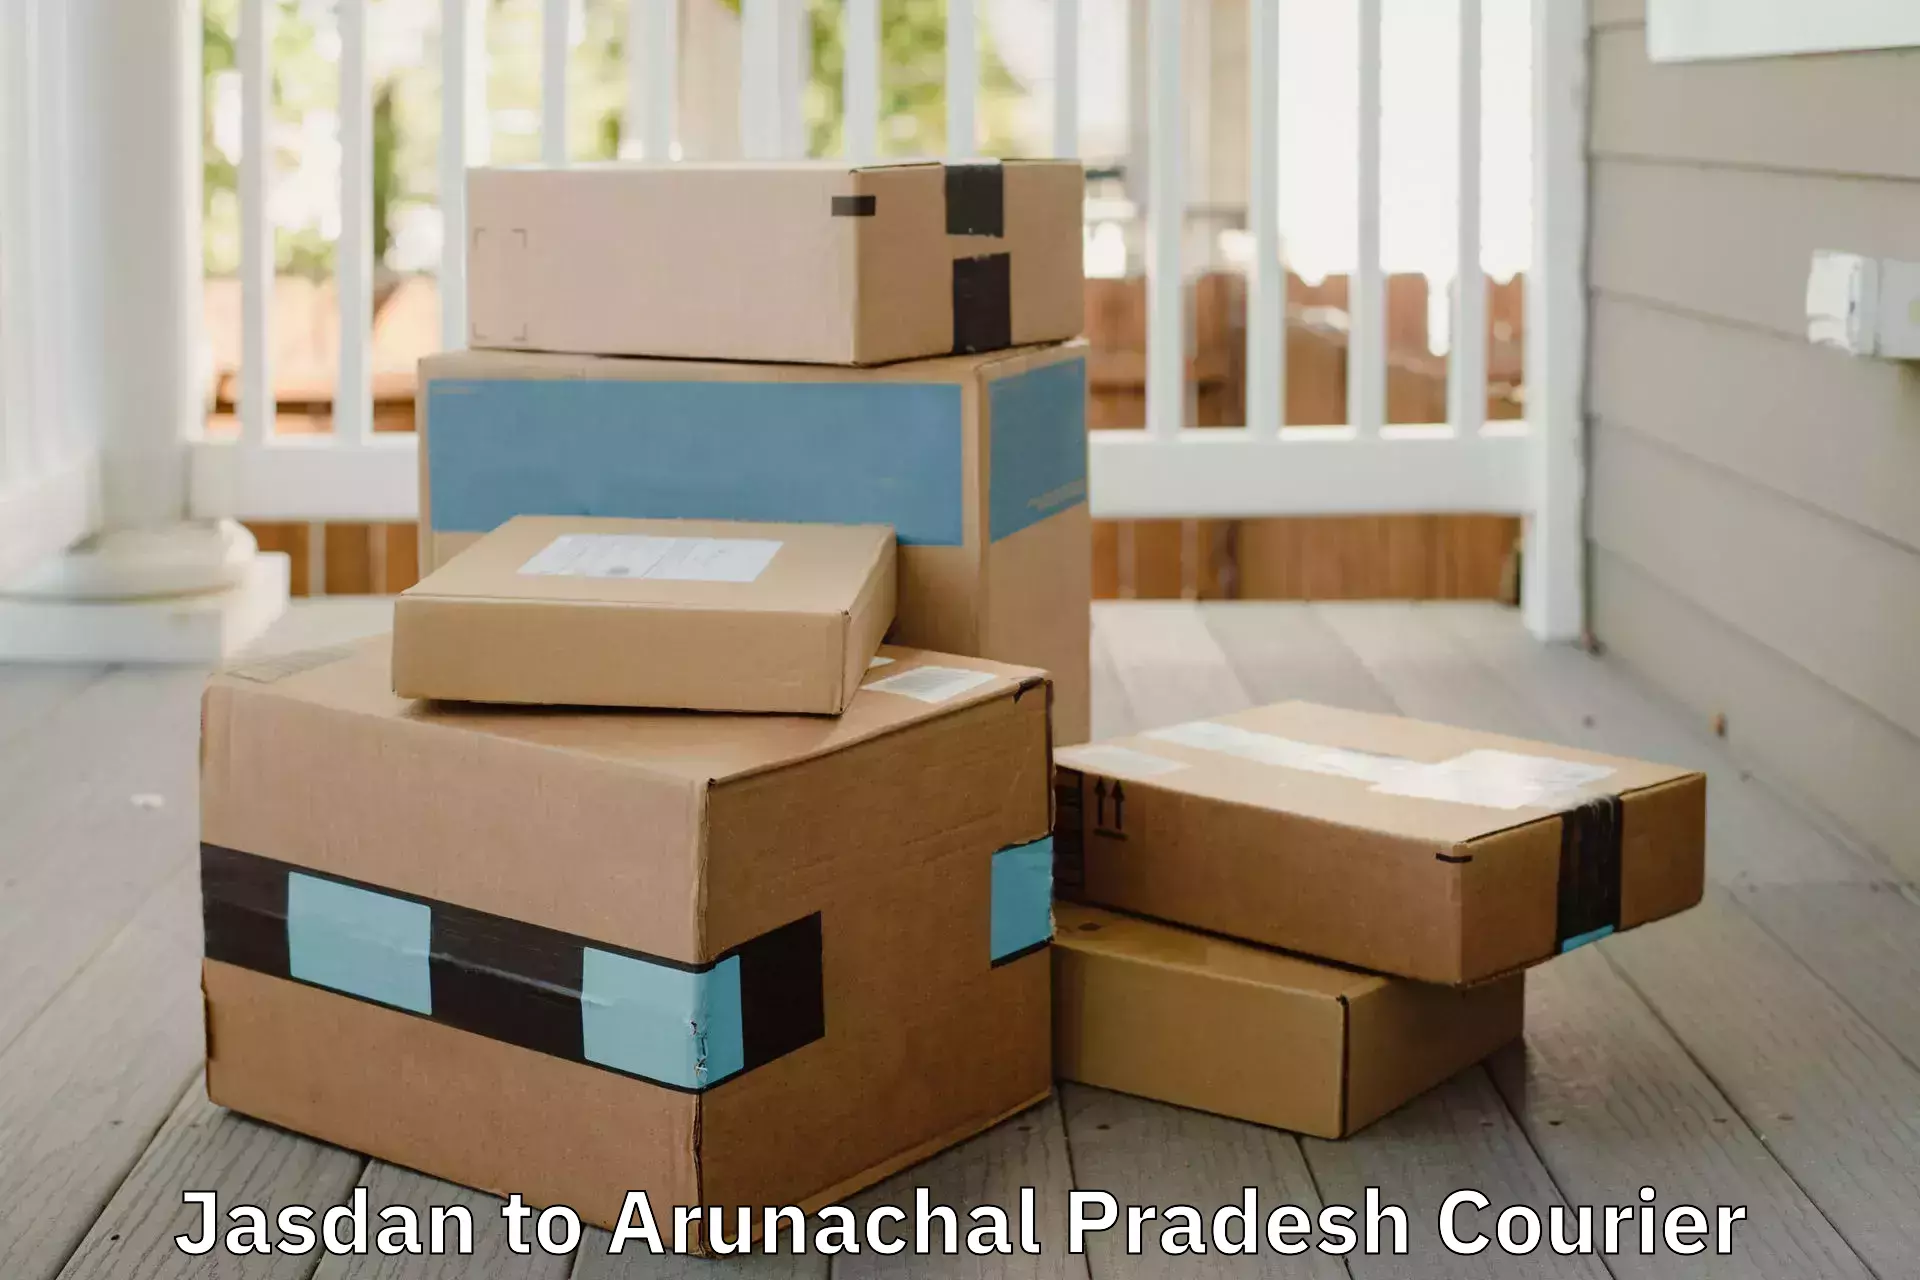 Efficient packing services Jasdan to Arunachal Pradesh